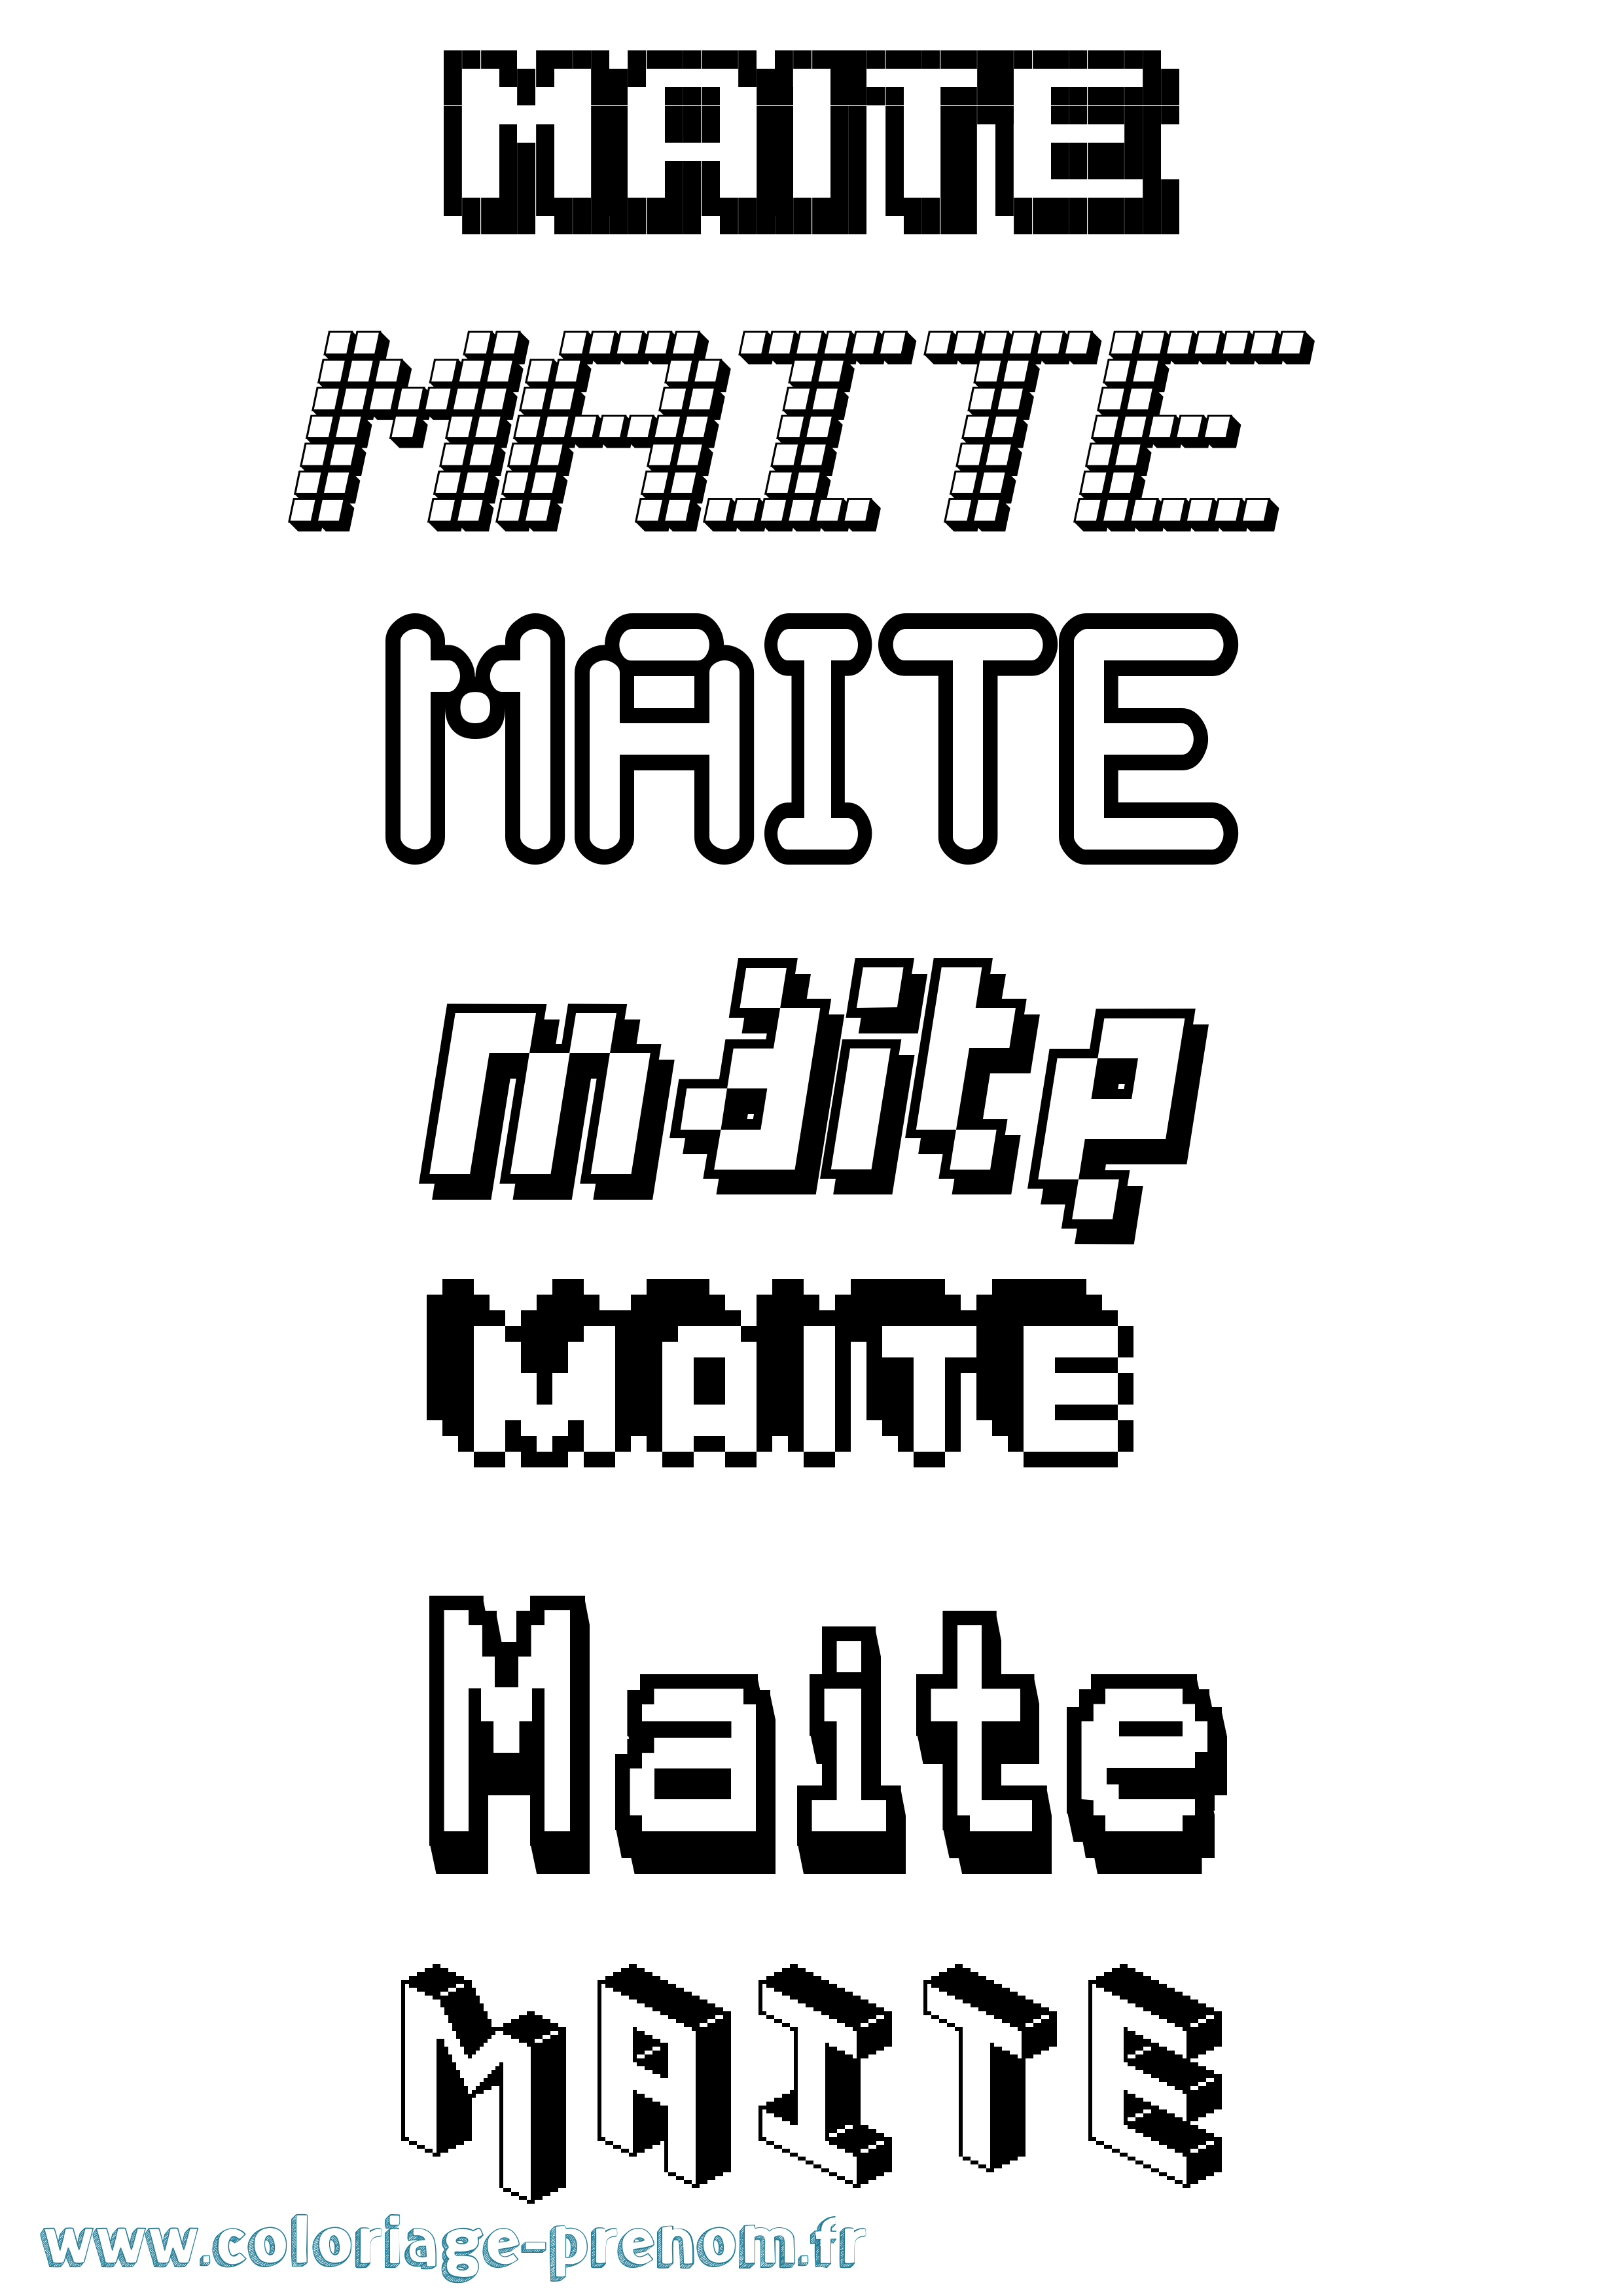 Coloriage prénom Maite Pixel